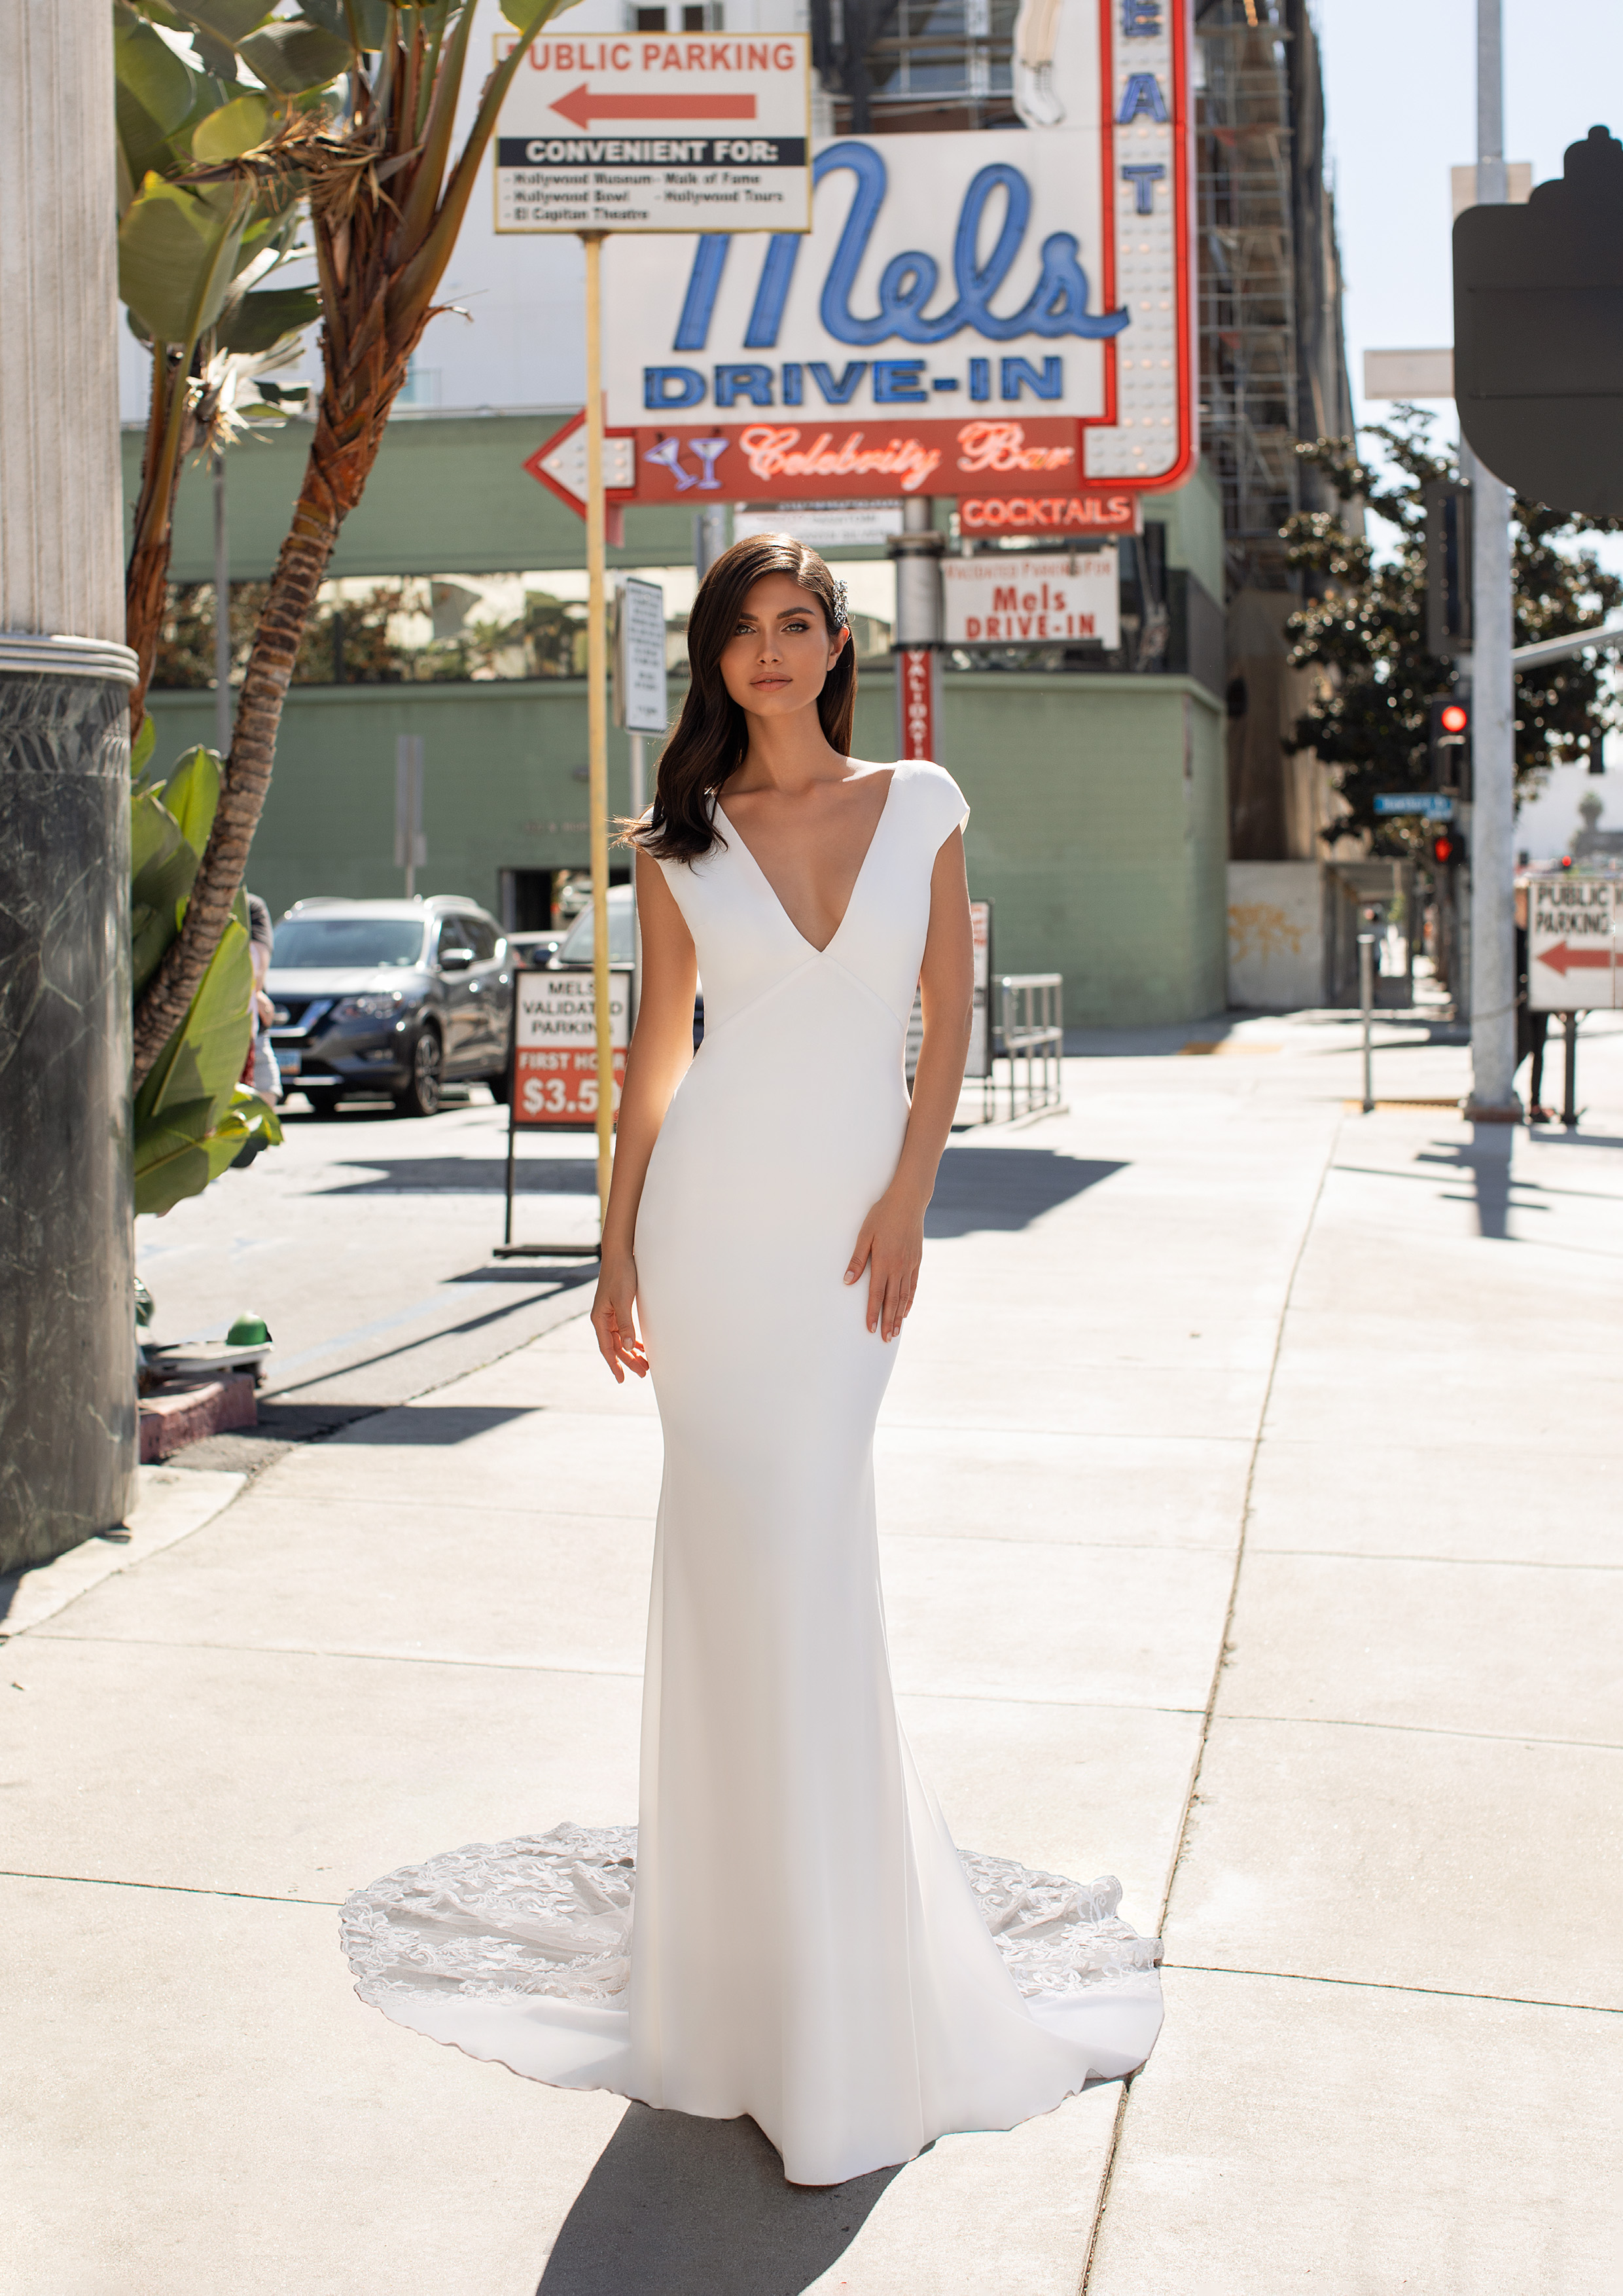 Vestido de noiva modelo Peters da coleção Pronovias 2021 Cruise Collection